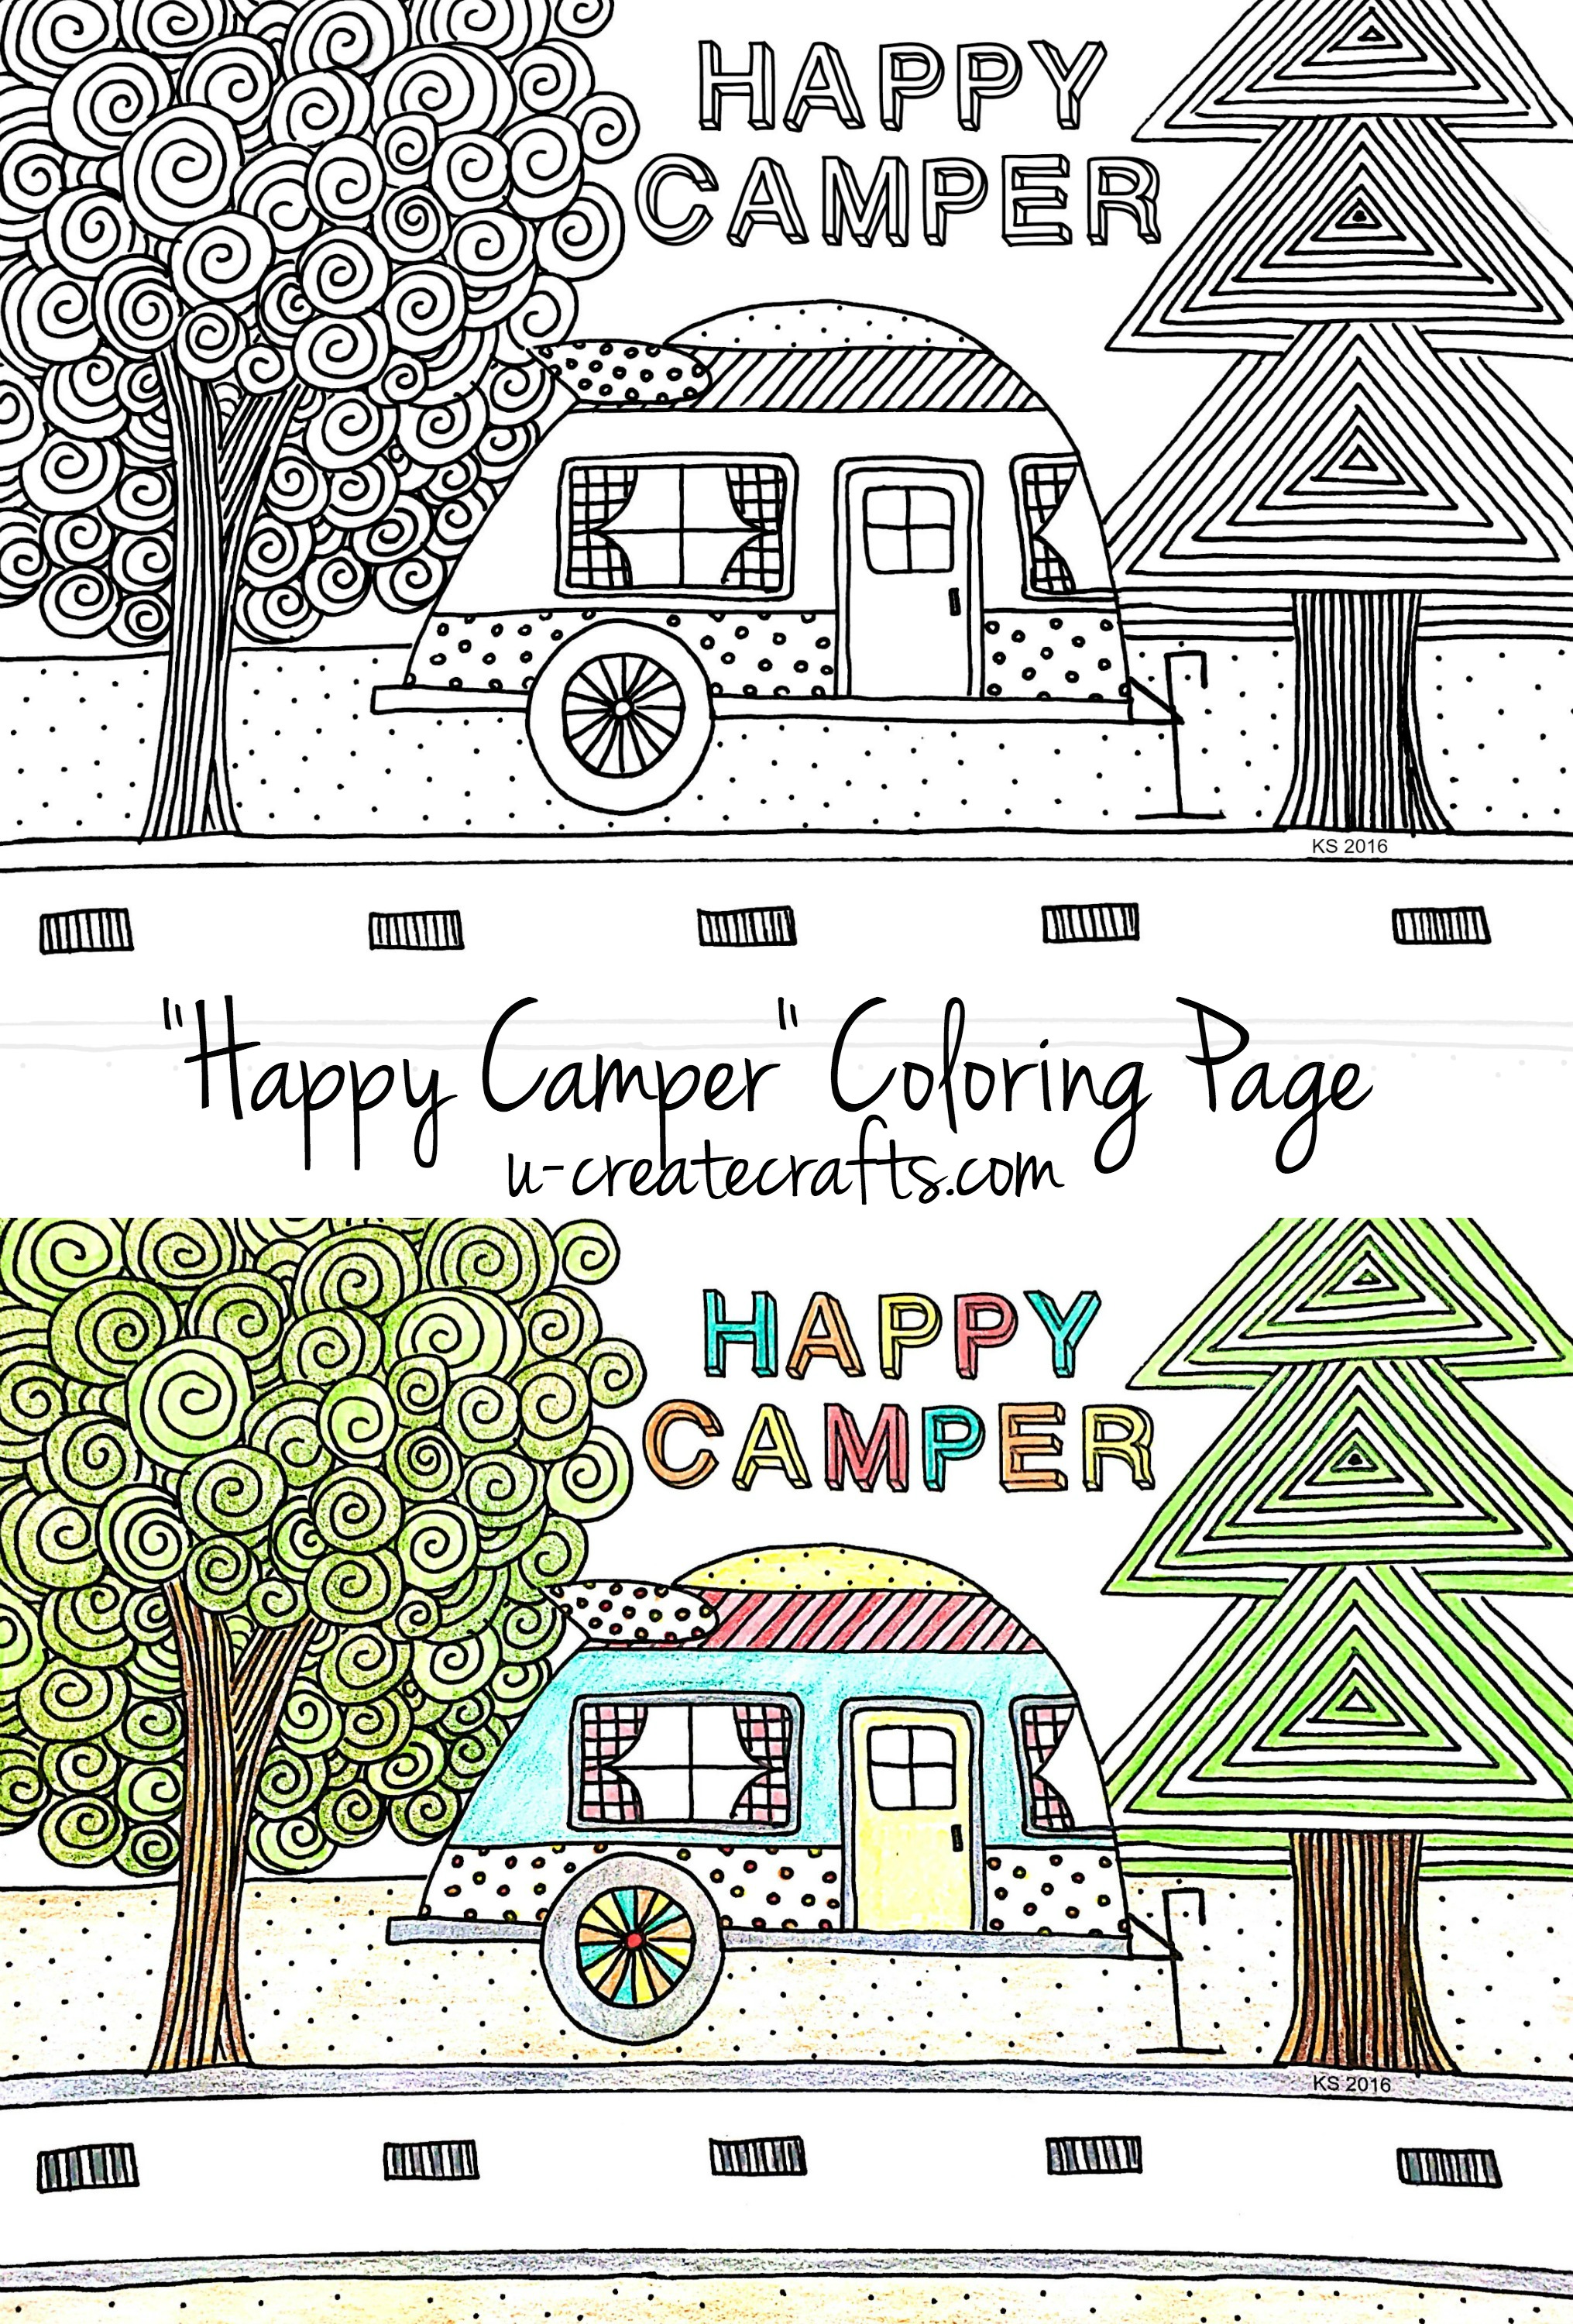 Happy camper coloring page